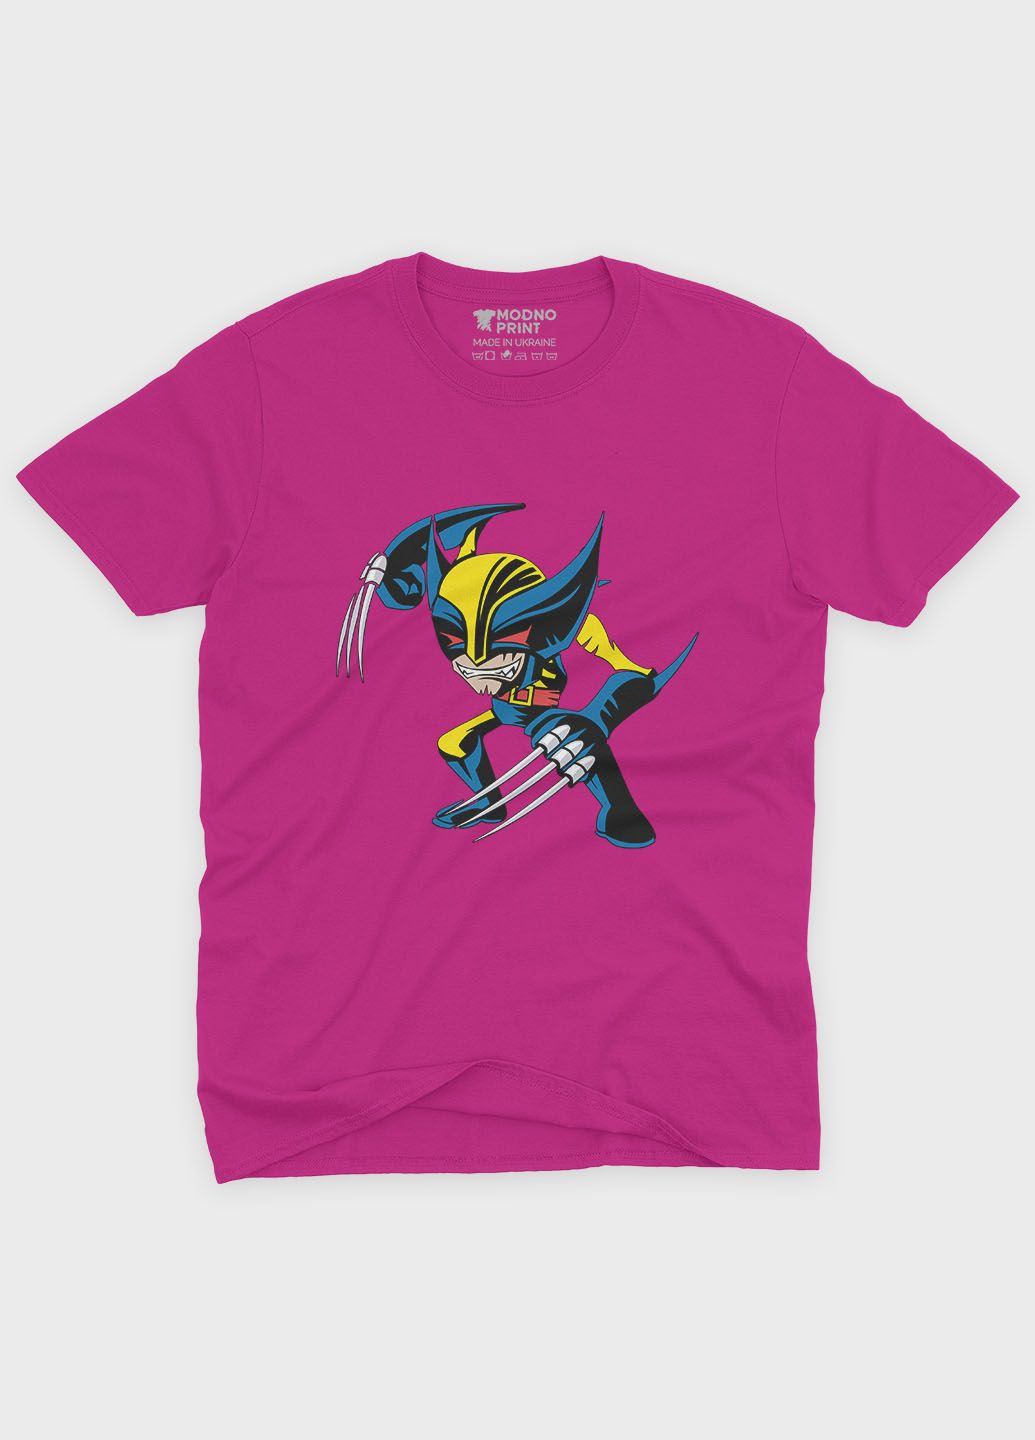 Розовая демисезонная футболка для девочки с принтом супергероя - росомаха (ts001-1-fuxj-006-021-002-g) Modno